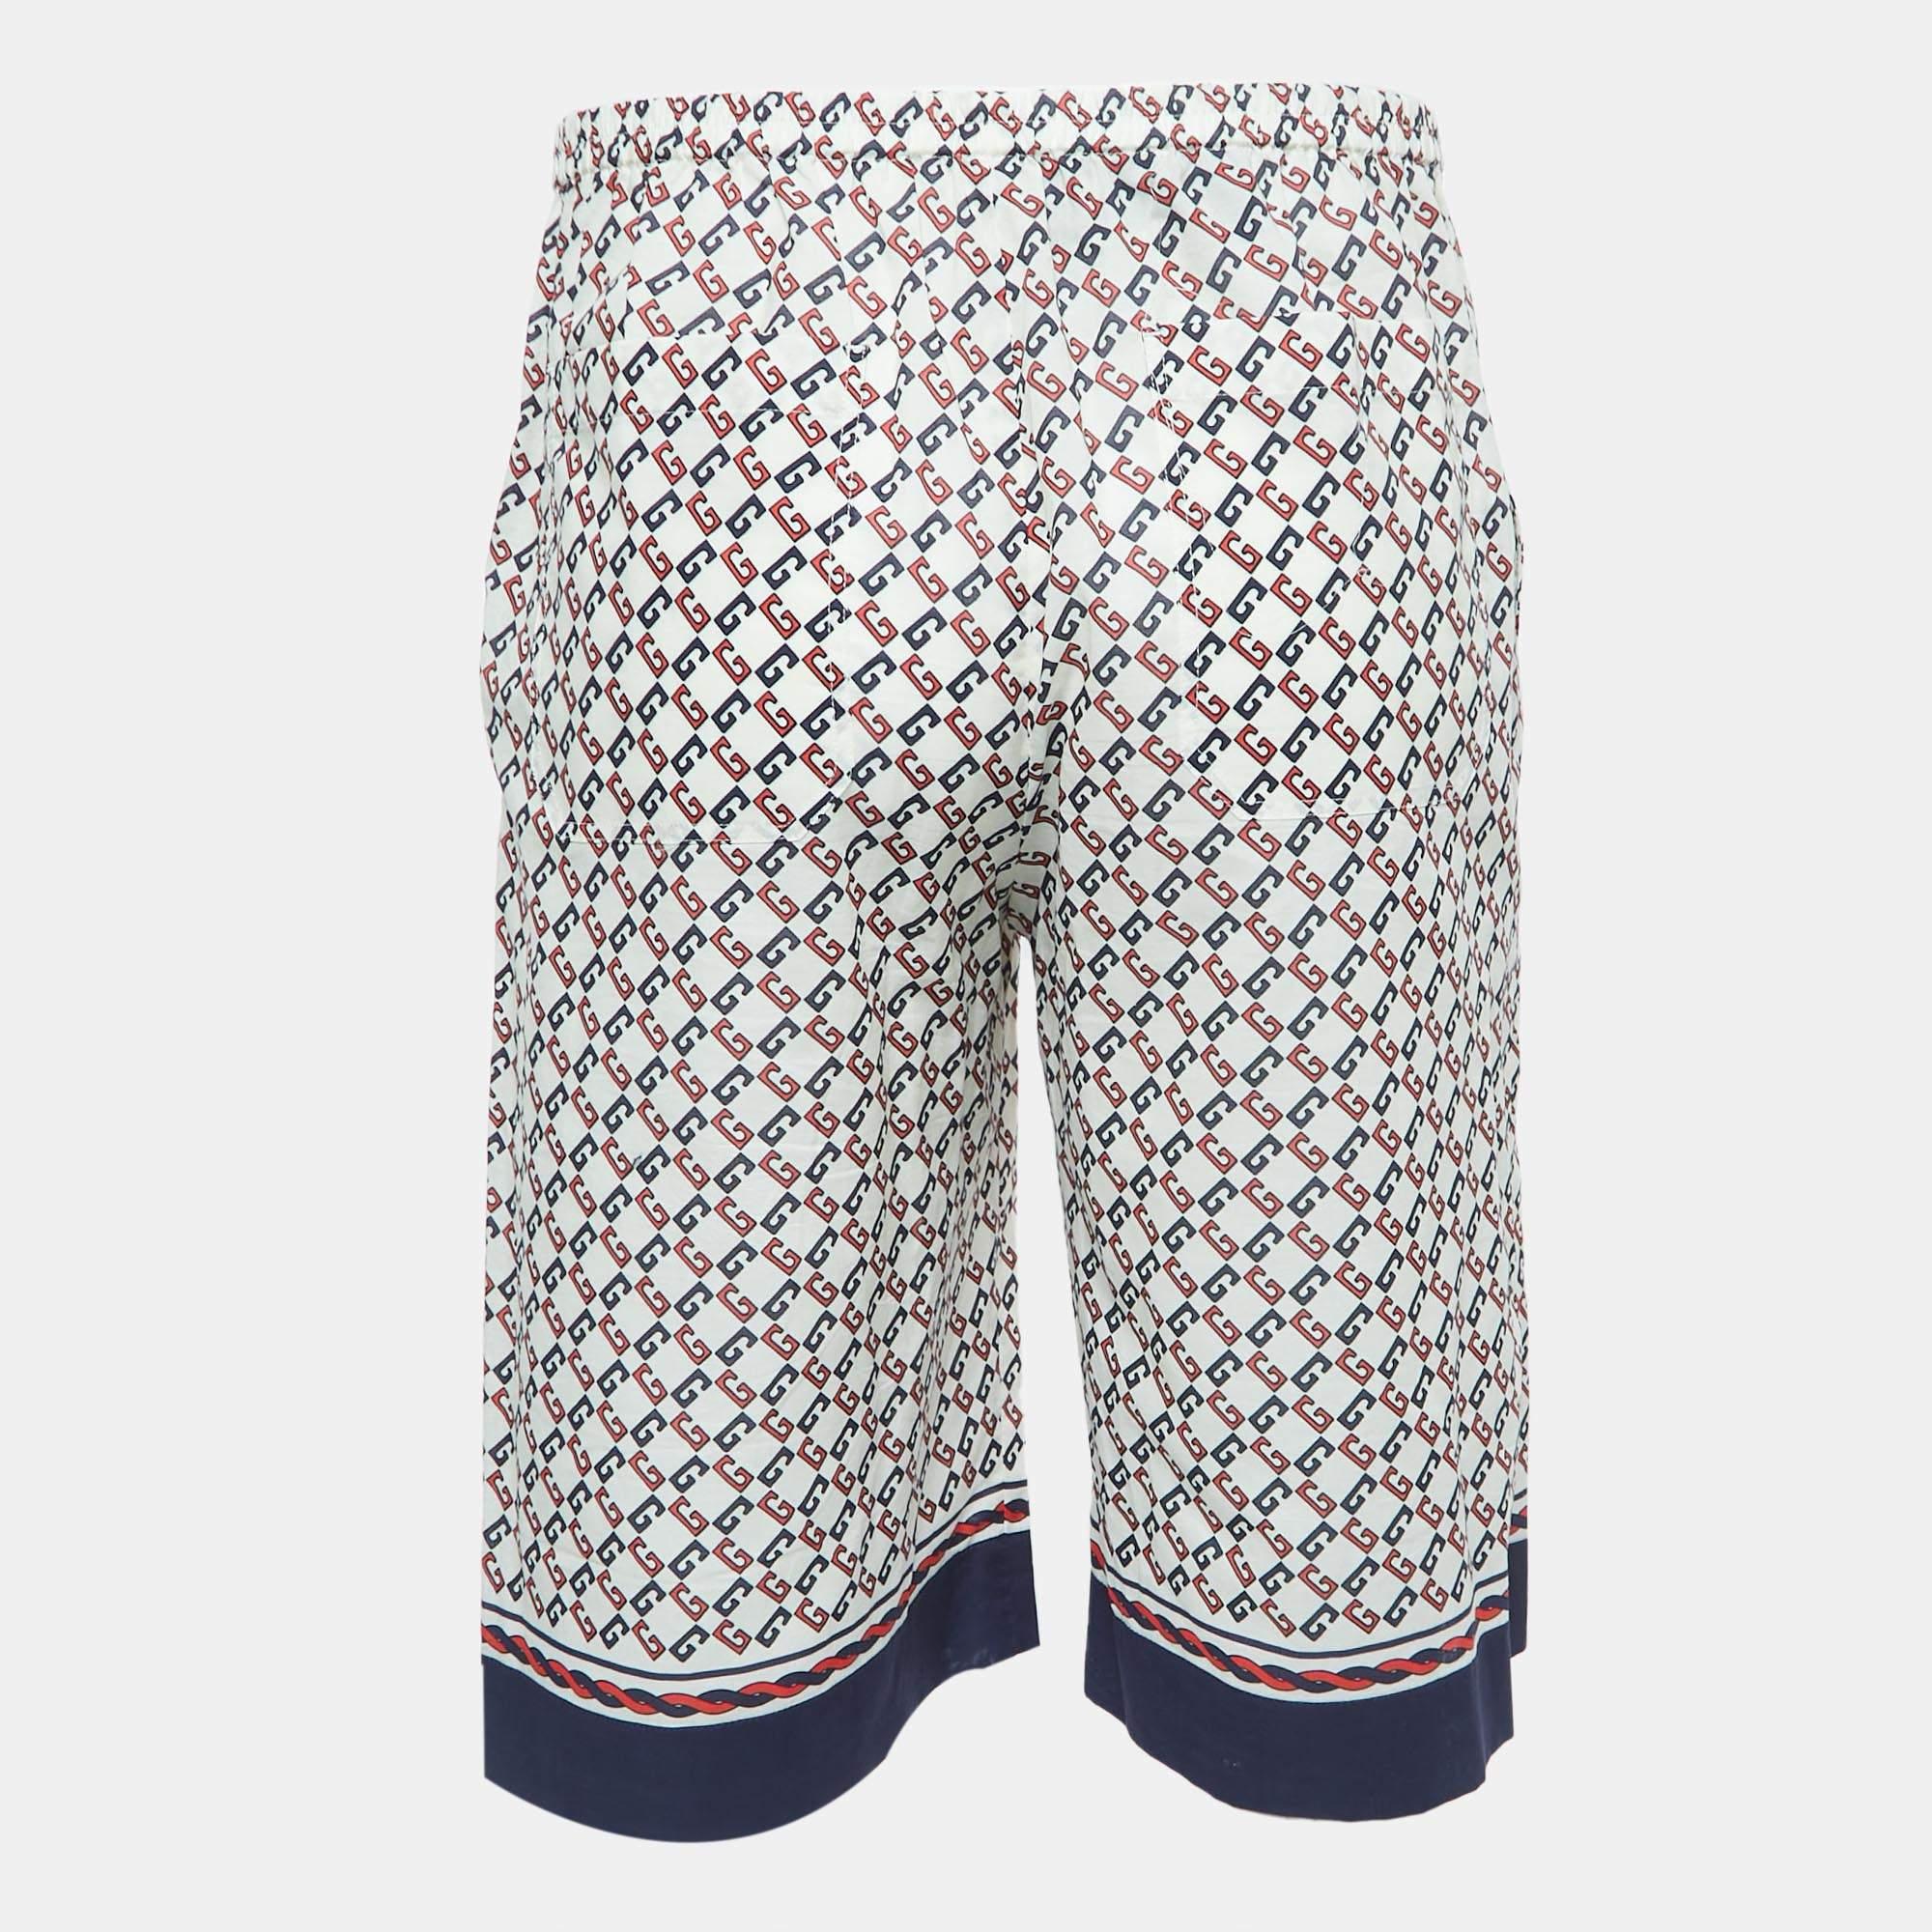 Strandurlaube verlangen nach einem stilvollen Paar Shorts wie diesem. Die aus hochwertigem Stoff genähten Shorts sind mit klassischen Details versehen und haben eine hervorragende Länge. Tragen Sie es zu T-Shirts.

